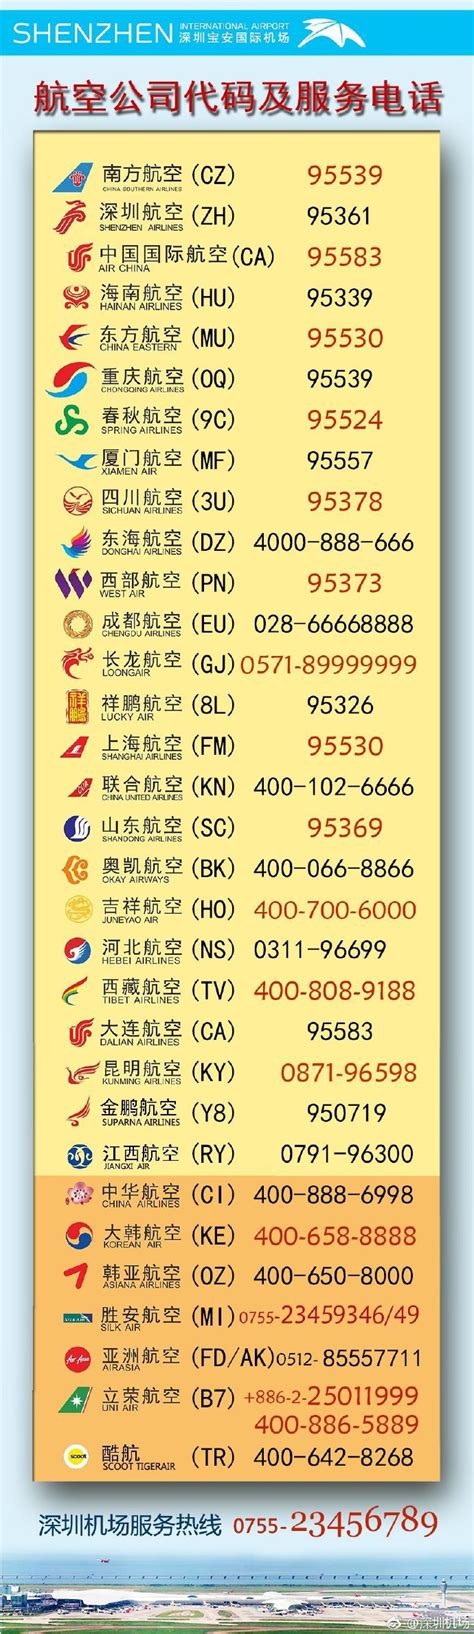 第4号台风已致深圳机场多趟航班取消 航班动态可这样查询 - 深圳本地宝